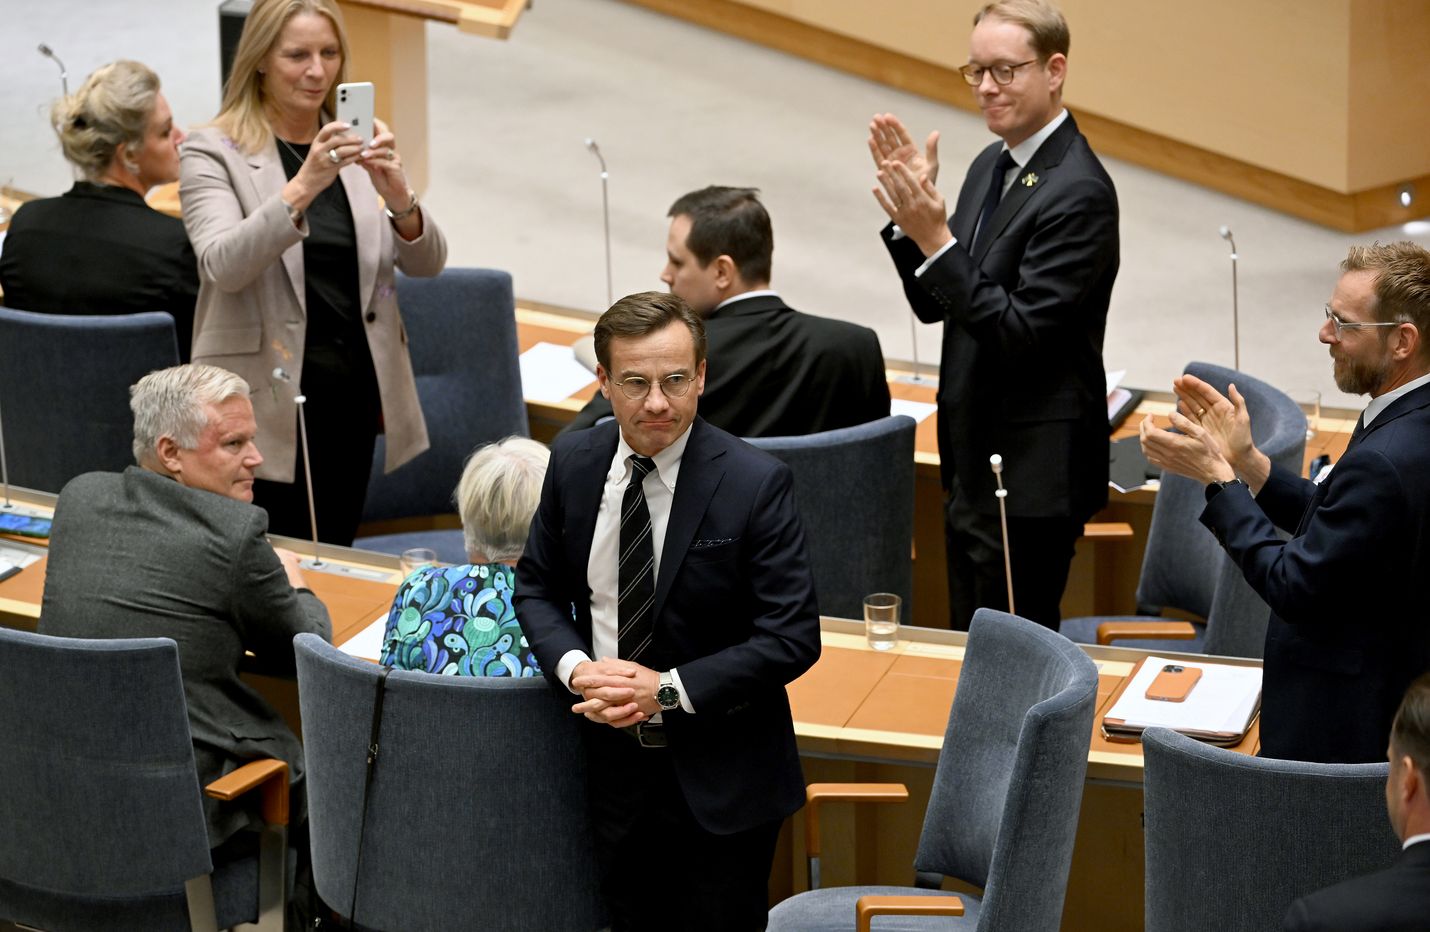 Valtiopäivät äänesti maltillisen kokoomuksen puheenjohtajan Ulf Kristerssonin pääministeriksi niukasti äänin 176-173. Edessä on vaikea hallituskausi ruotsidemokraattien valvonnassa.